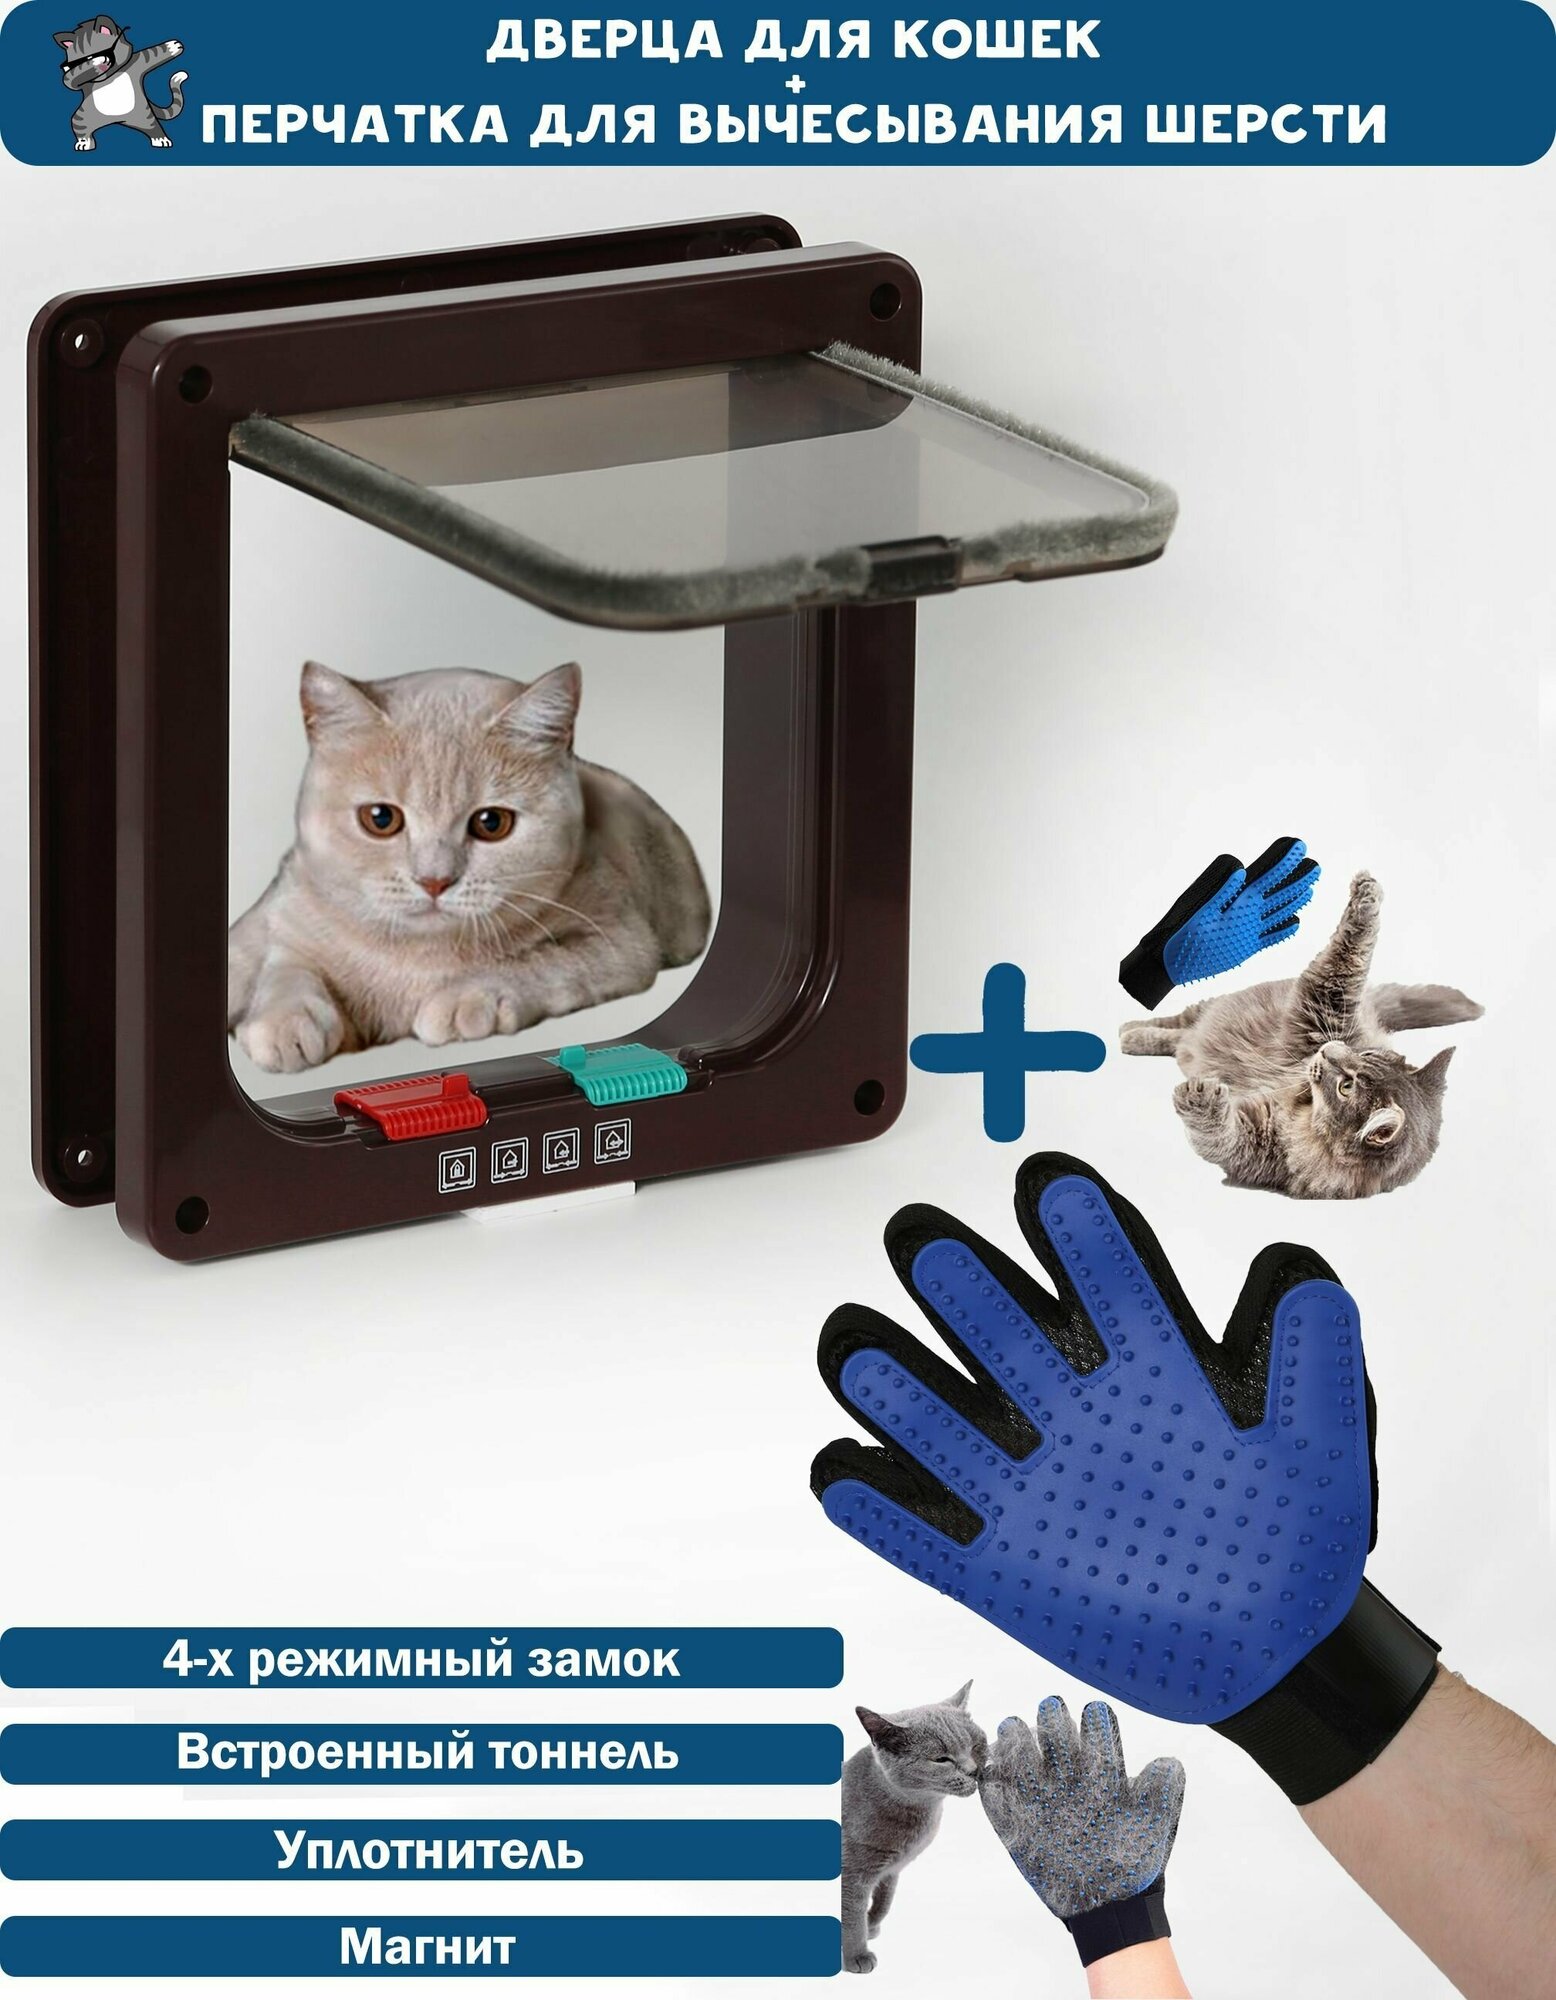 Дверца для животных Размер люка 16Х15,5. Цвет: Коричневый + перчатка для вычесывания шерсти / Лаз для кошки